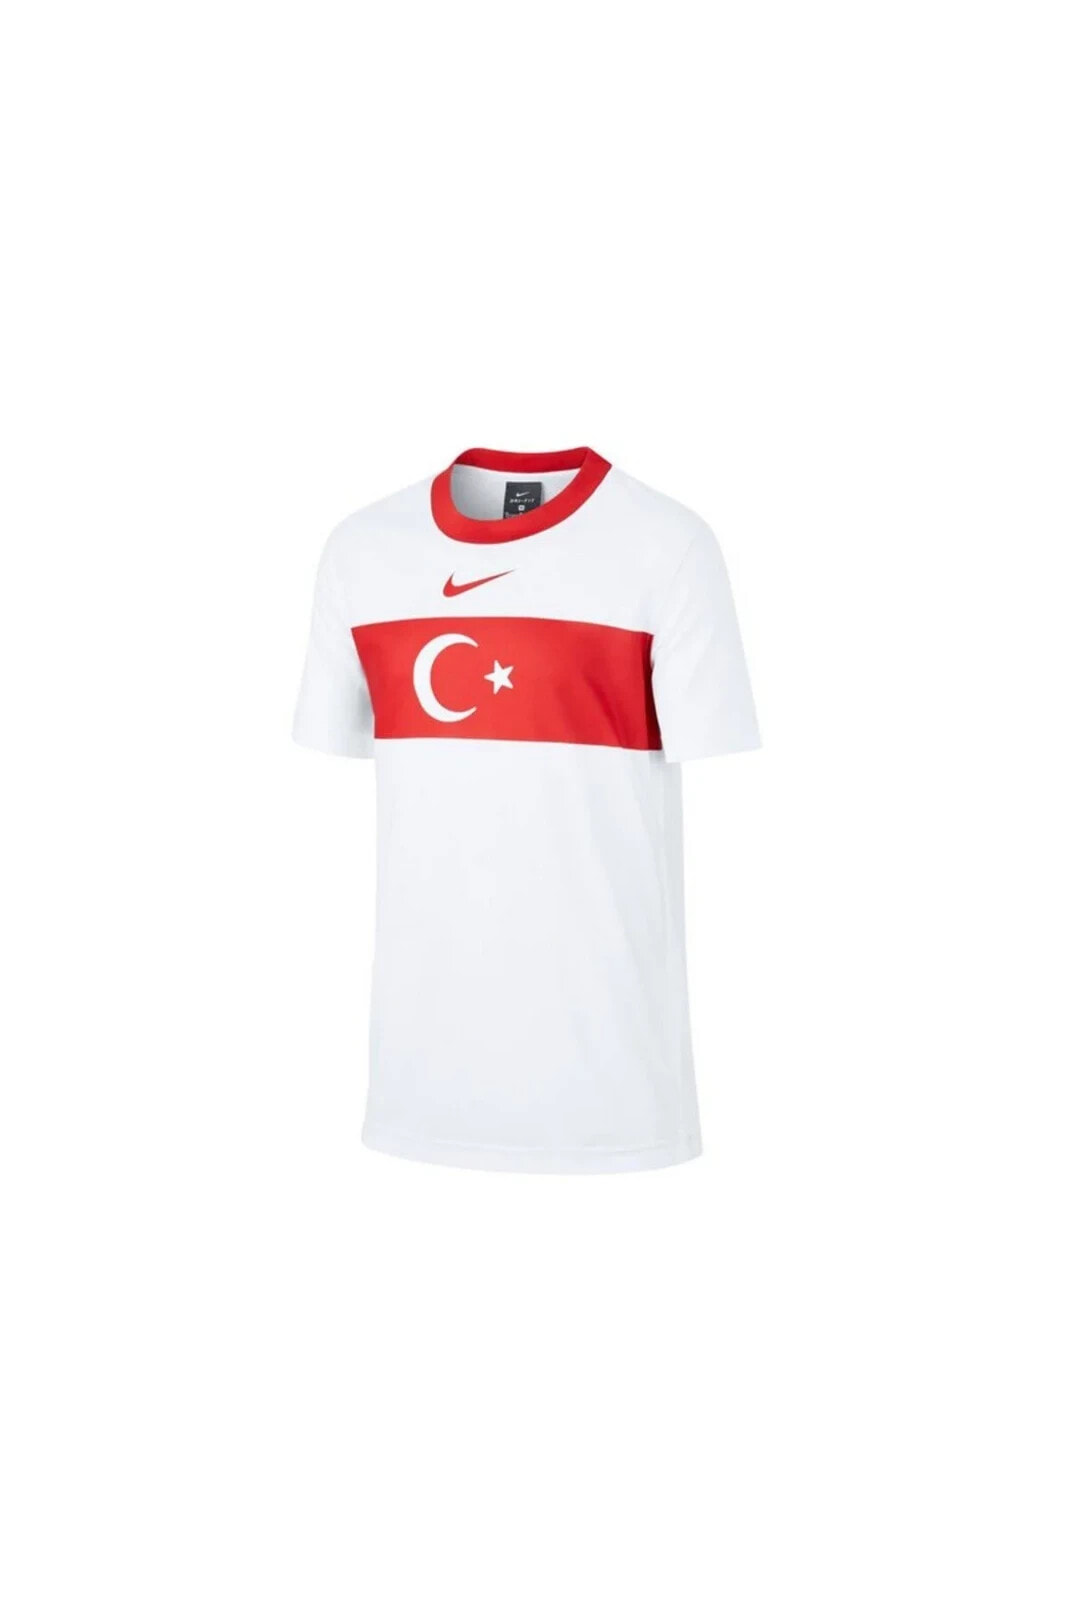 Türkiye 2020 Milli Takım Çocuk Beyaz Forma CD1208-100